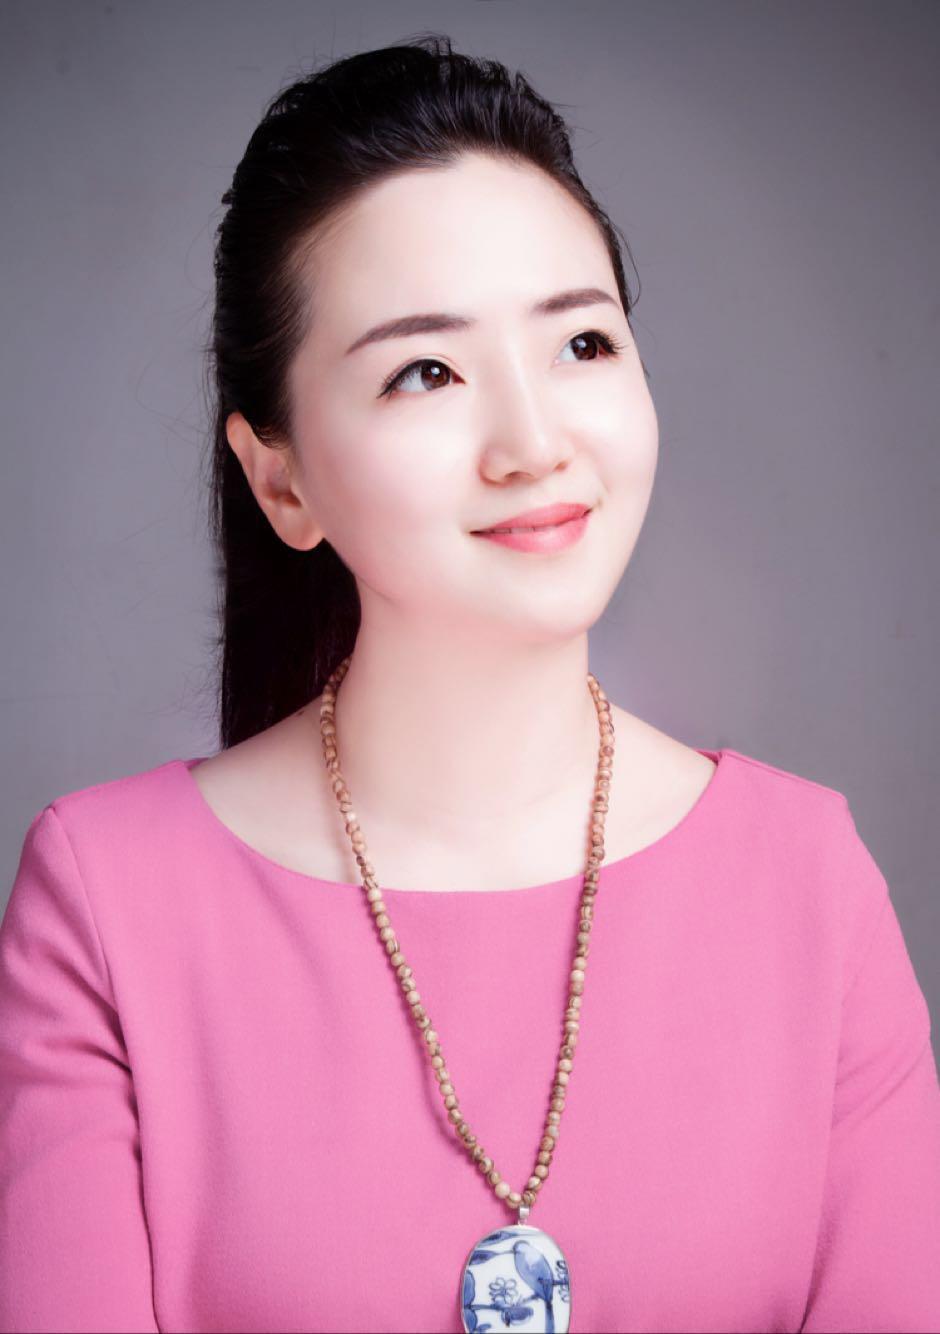 郑康宜女，1985年生于景德镇，2006年毕业以后一直从事陶瓷艺术。现为江西省工艺美术师，景德镇市陶瓷协会会员。